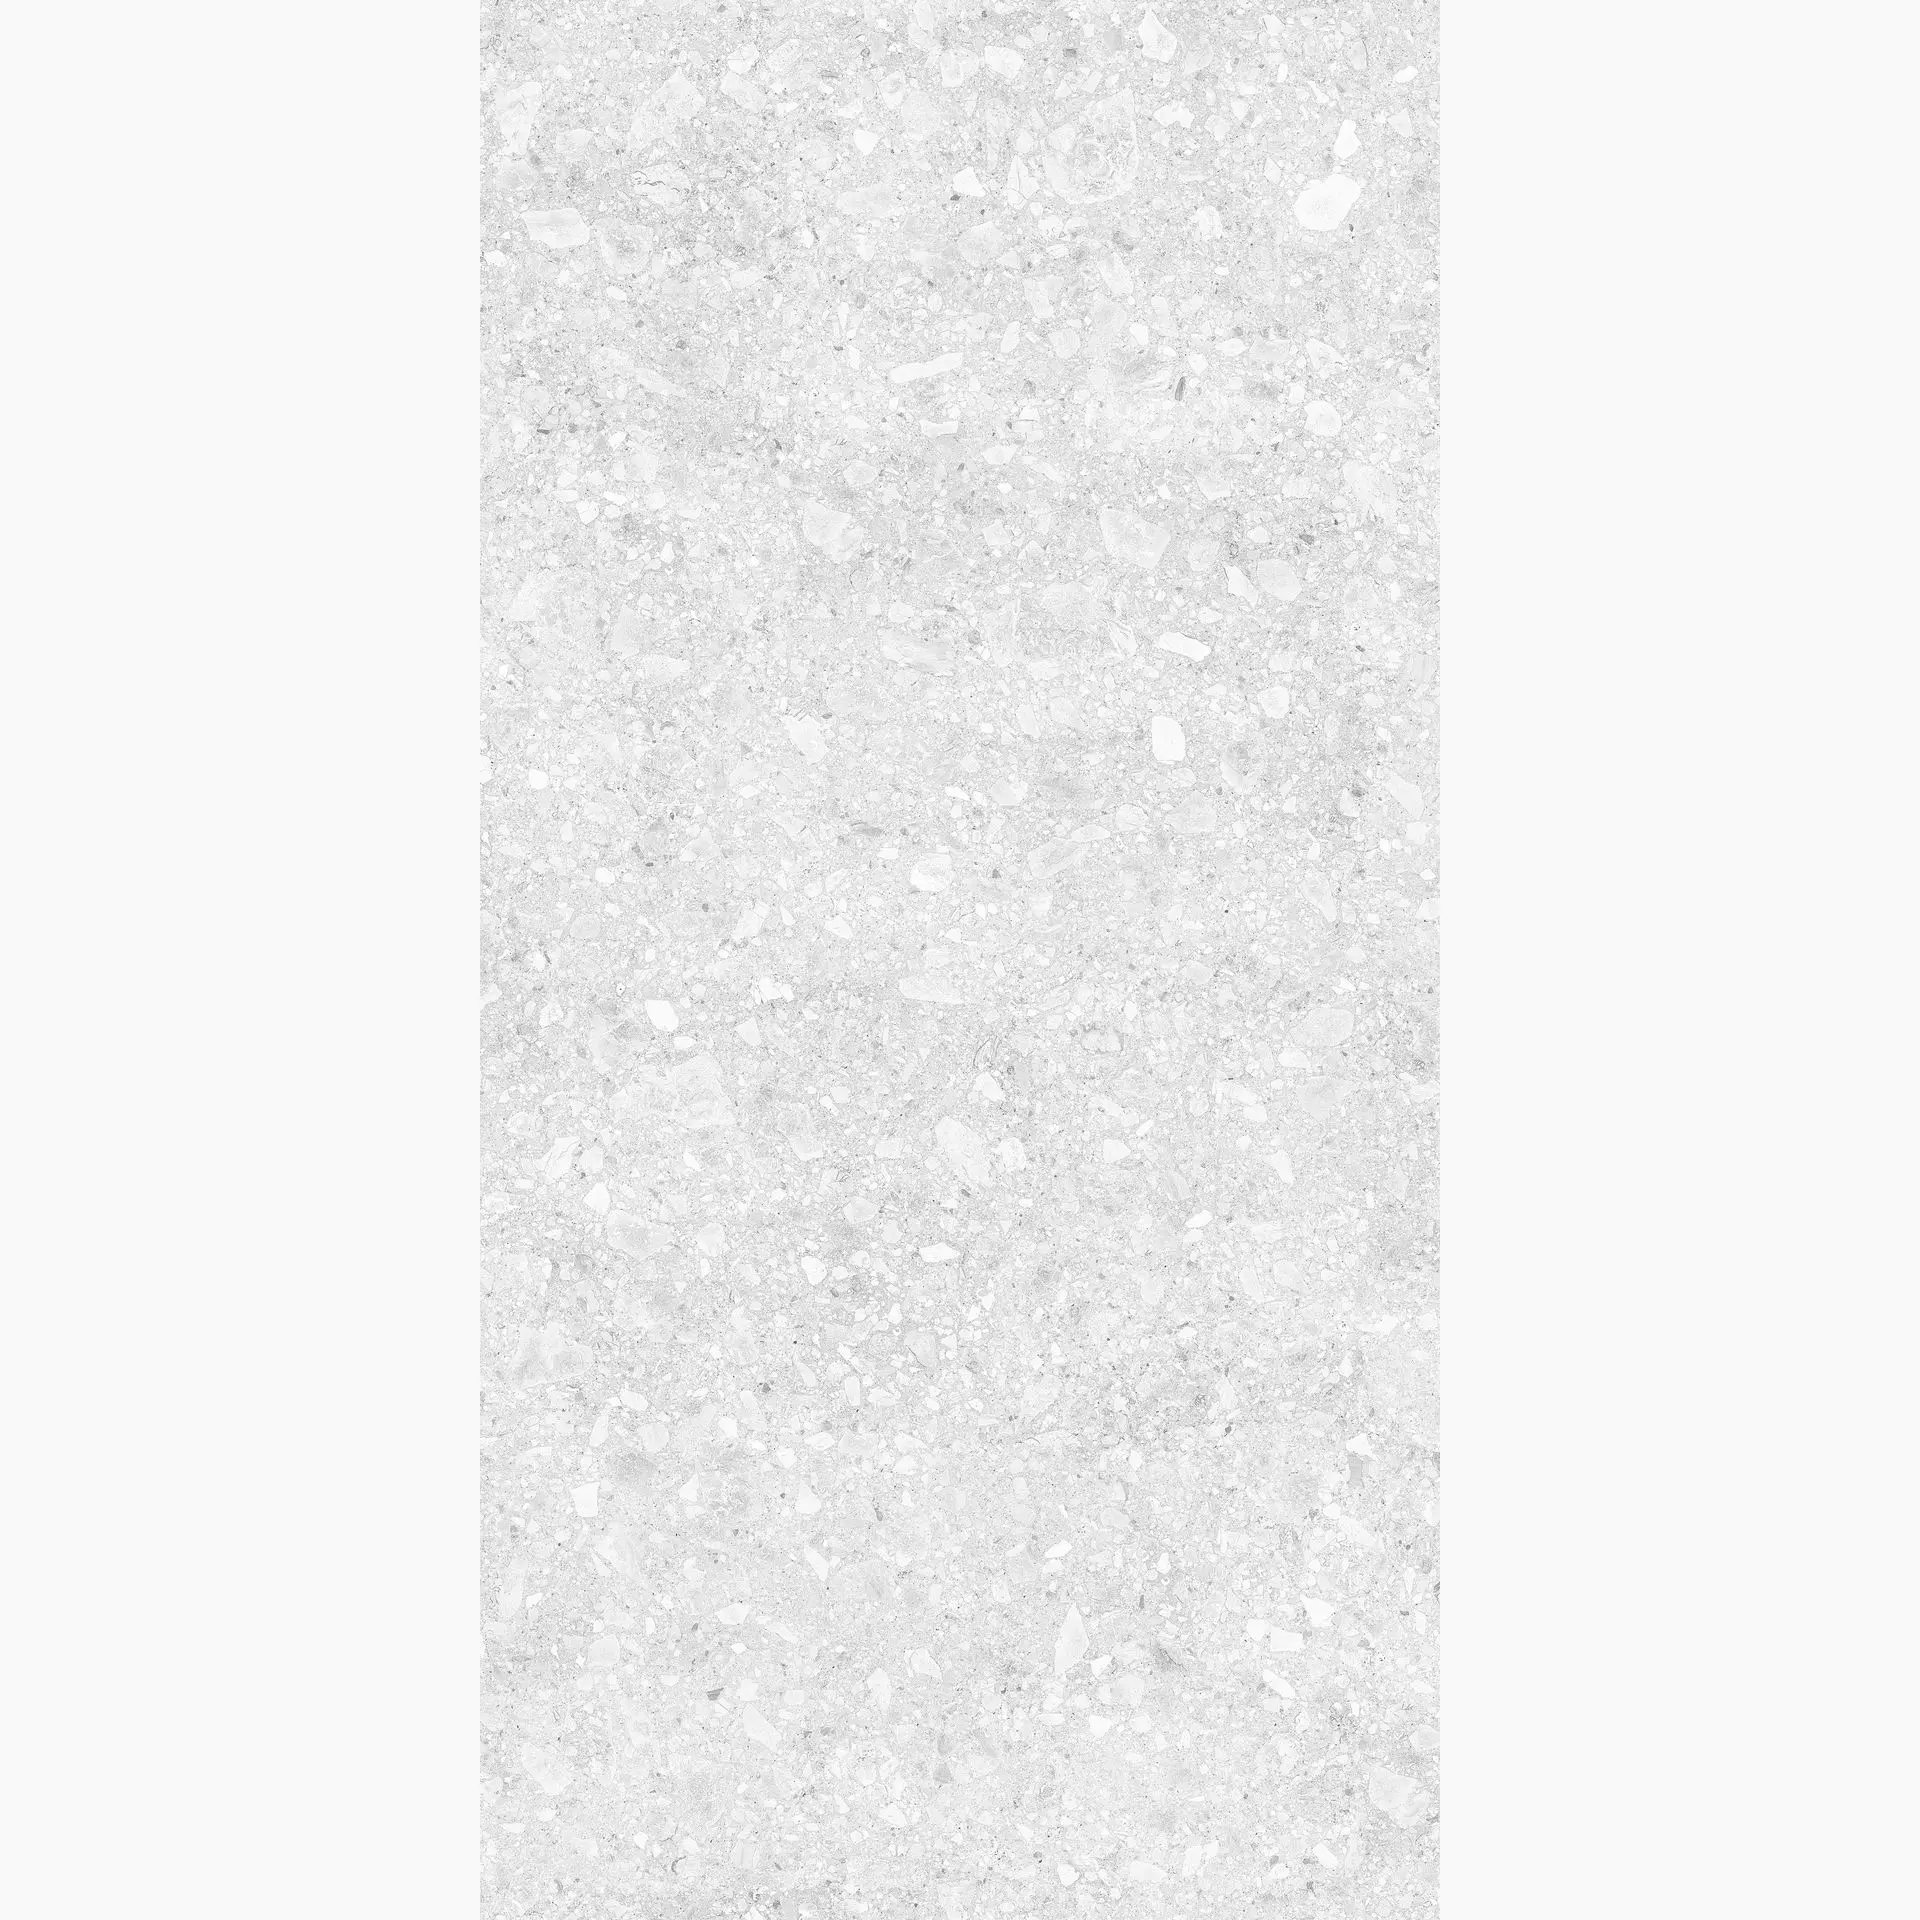 Casalgrande Pietre Di Paragone Bianco Naturale – Matt 1460104 60x120cm rectified 10mm